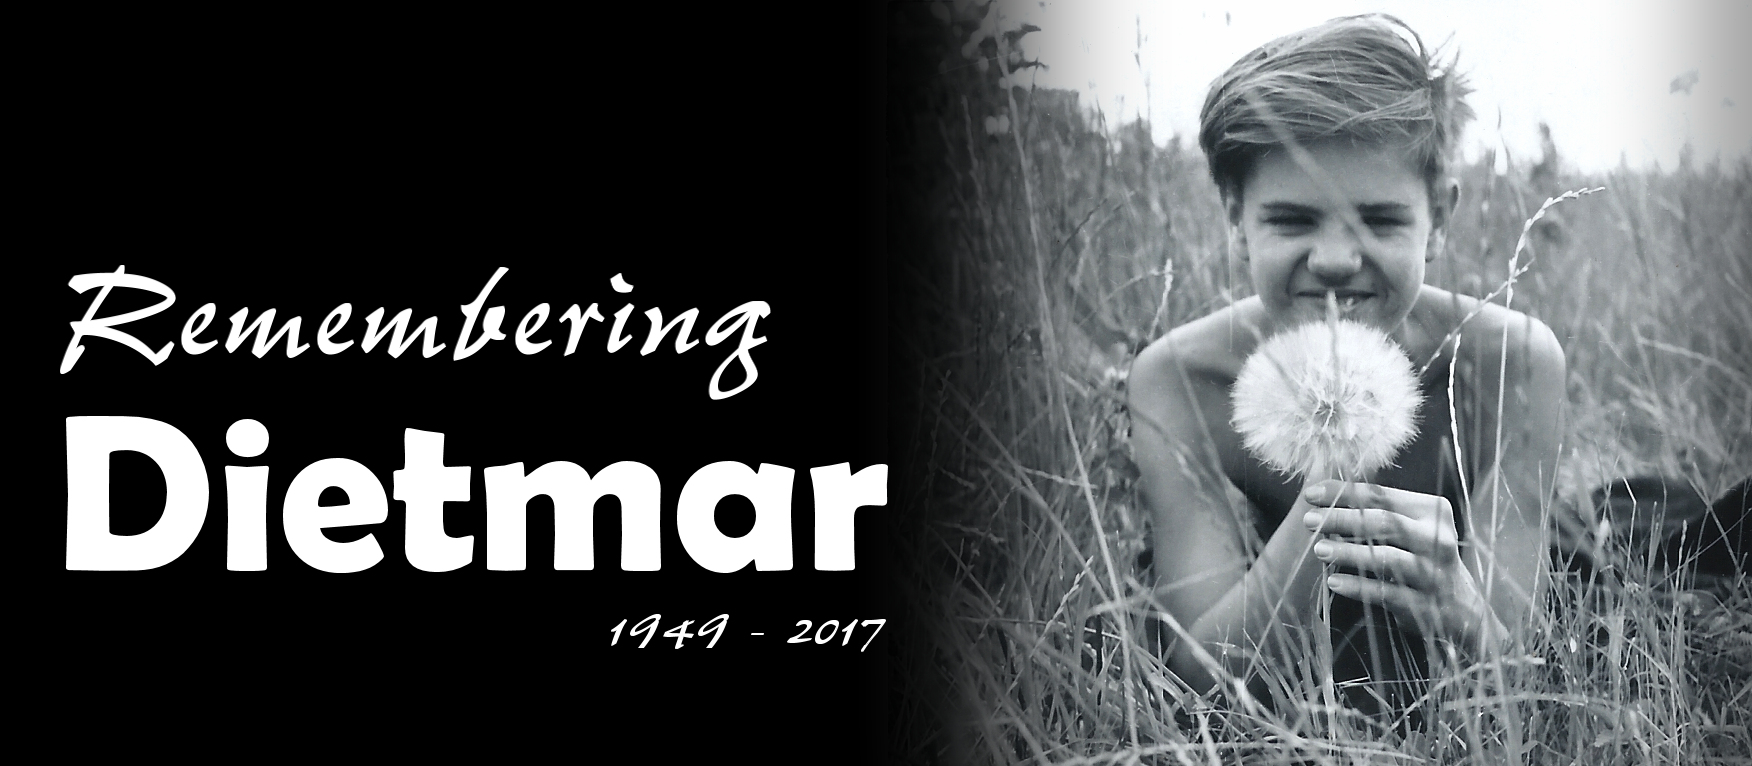 Remembering Dietmar